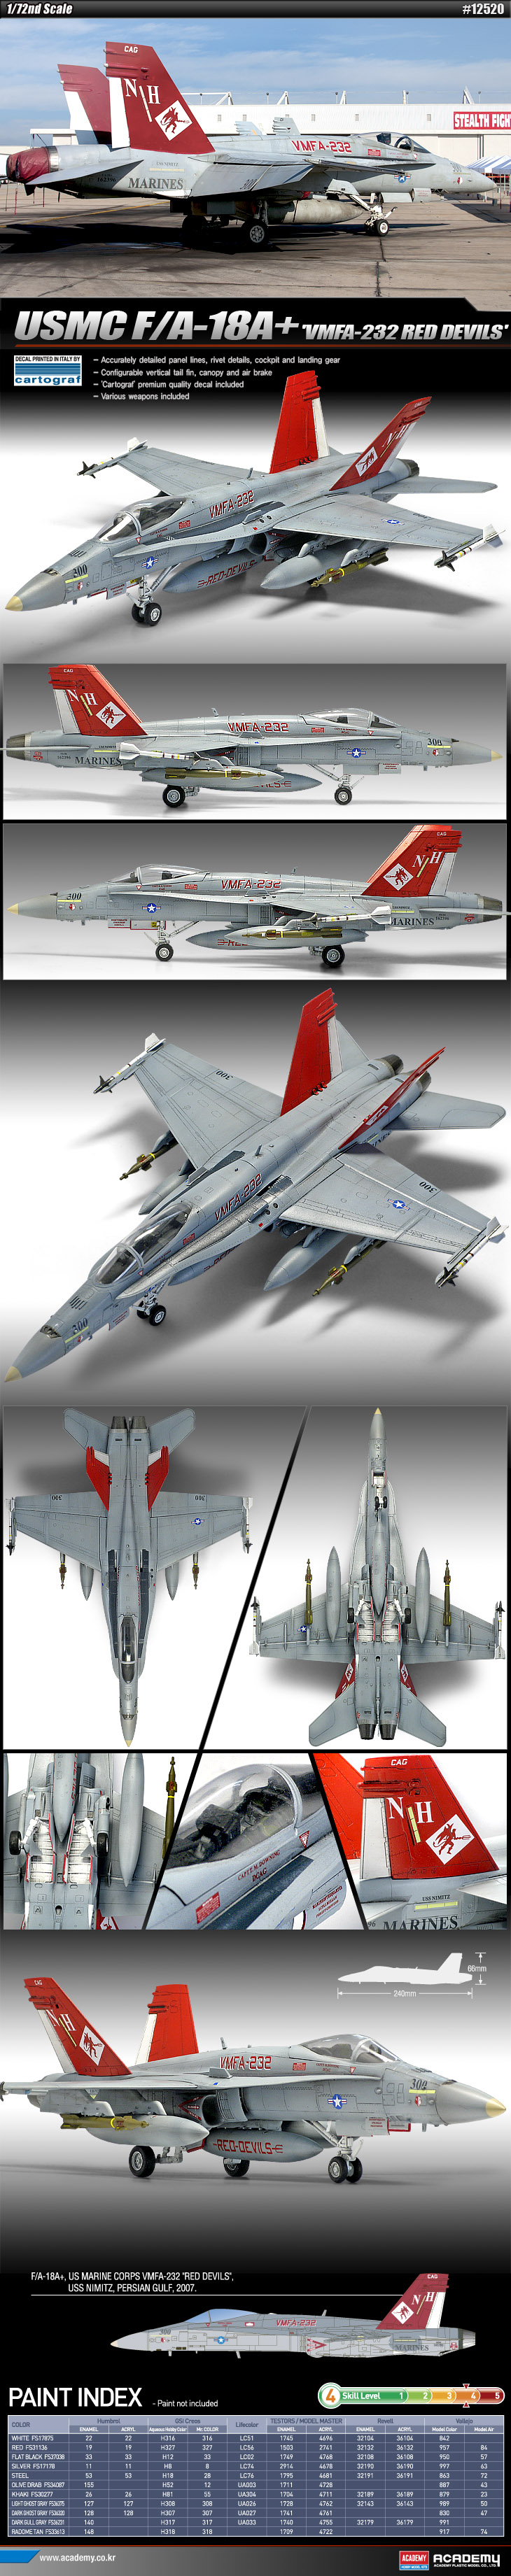 1/72 F/A-18A＋ "VMFA-232 レッド・デビルス" - ウインドウを閉じる